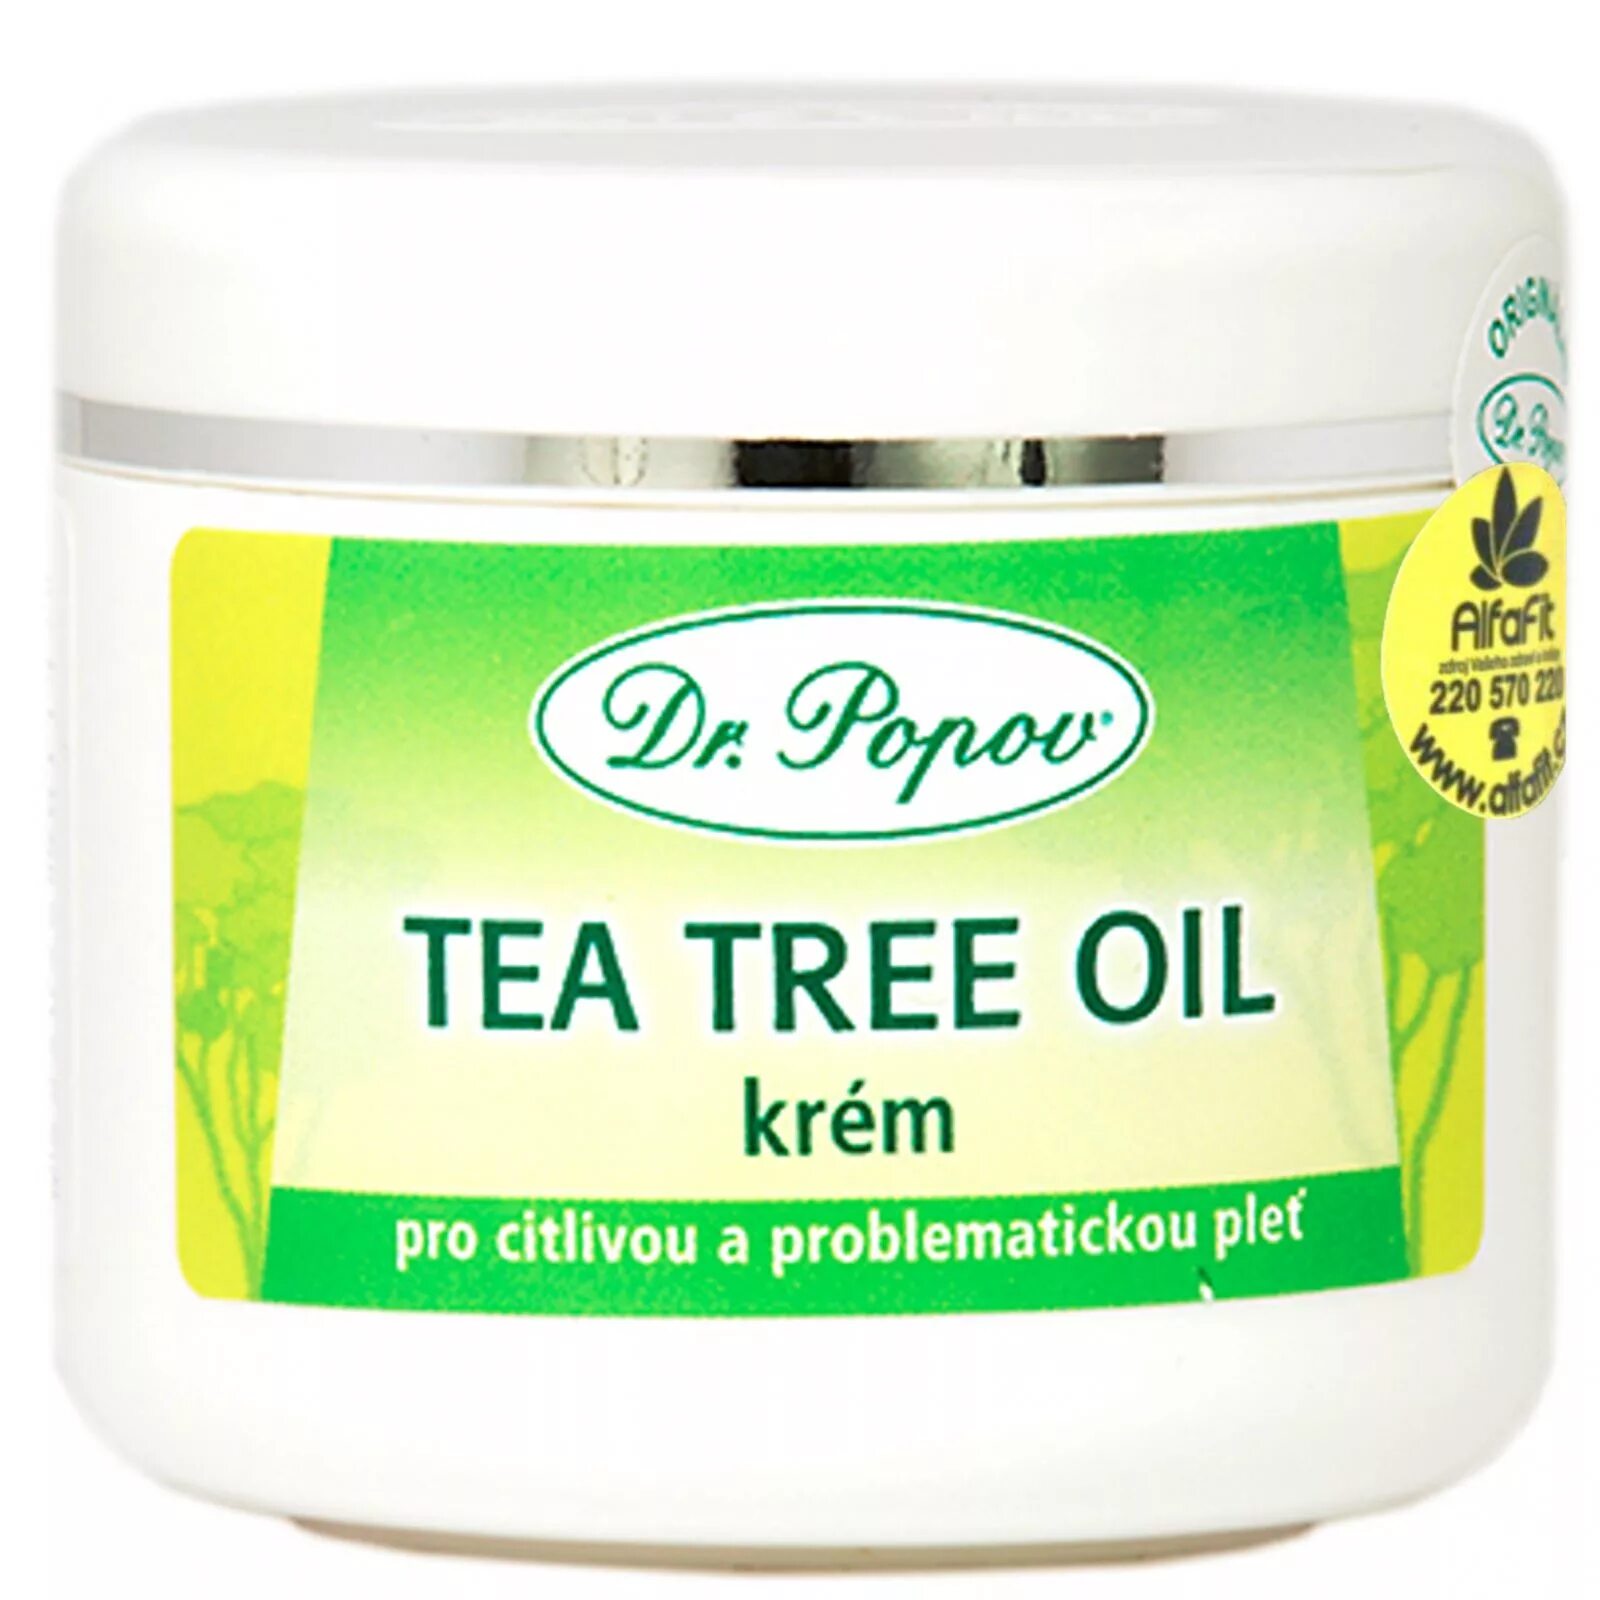 Крем масло для цветов. Крем чайное дерево. Крем из чайного дерева. Tea Tree крем для лица. Is Tree кирем.